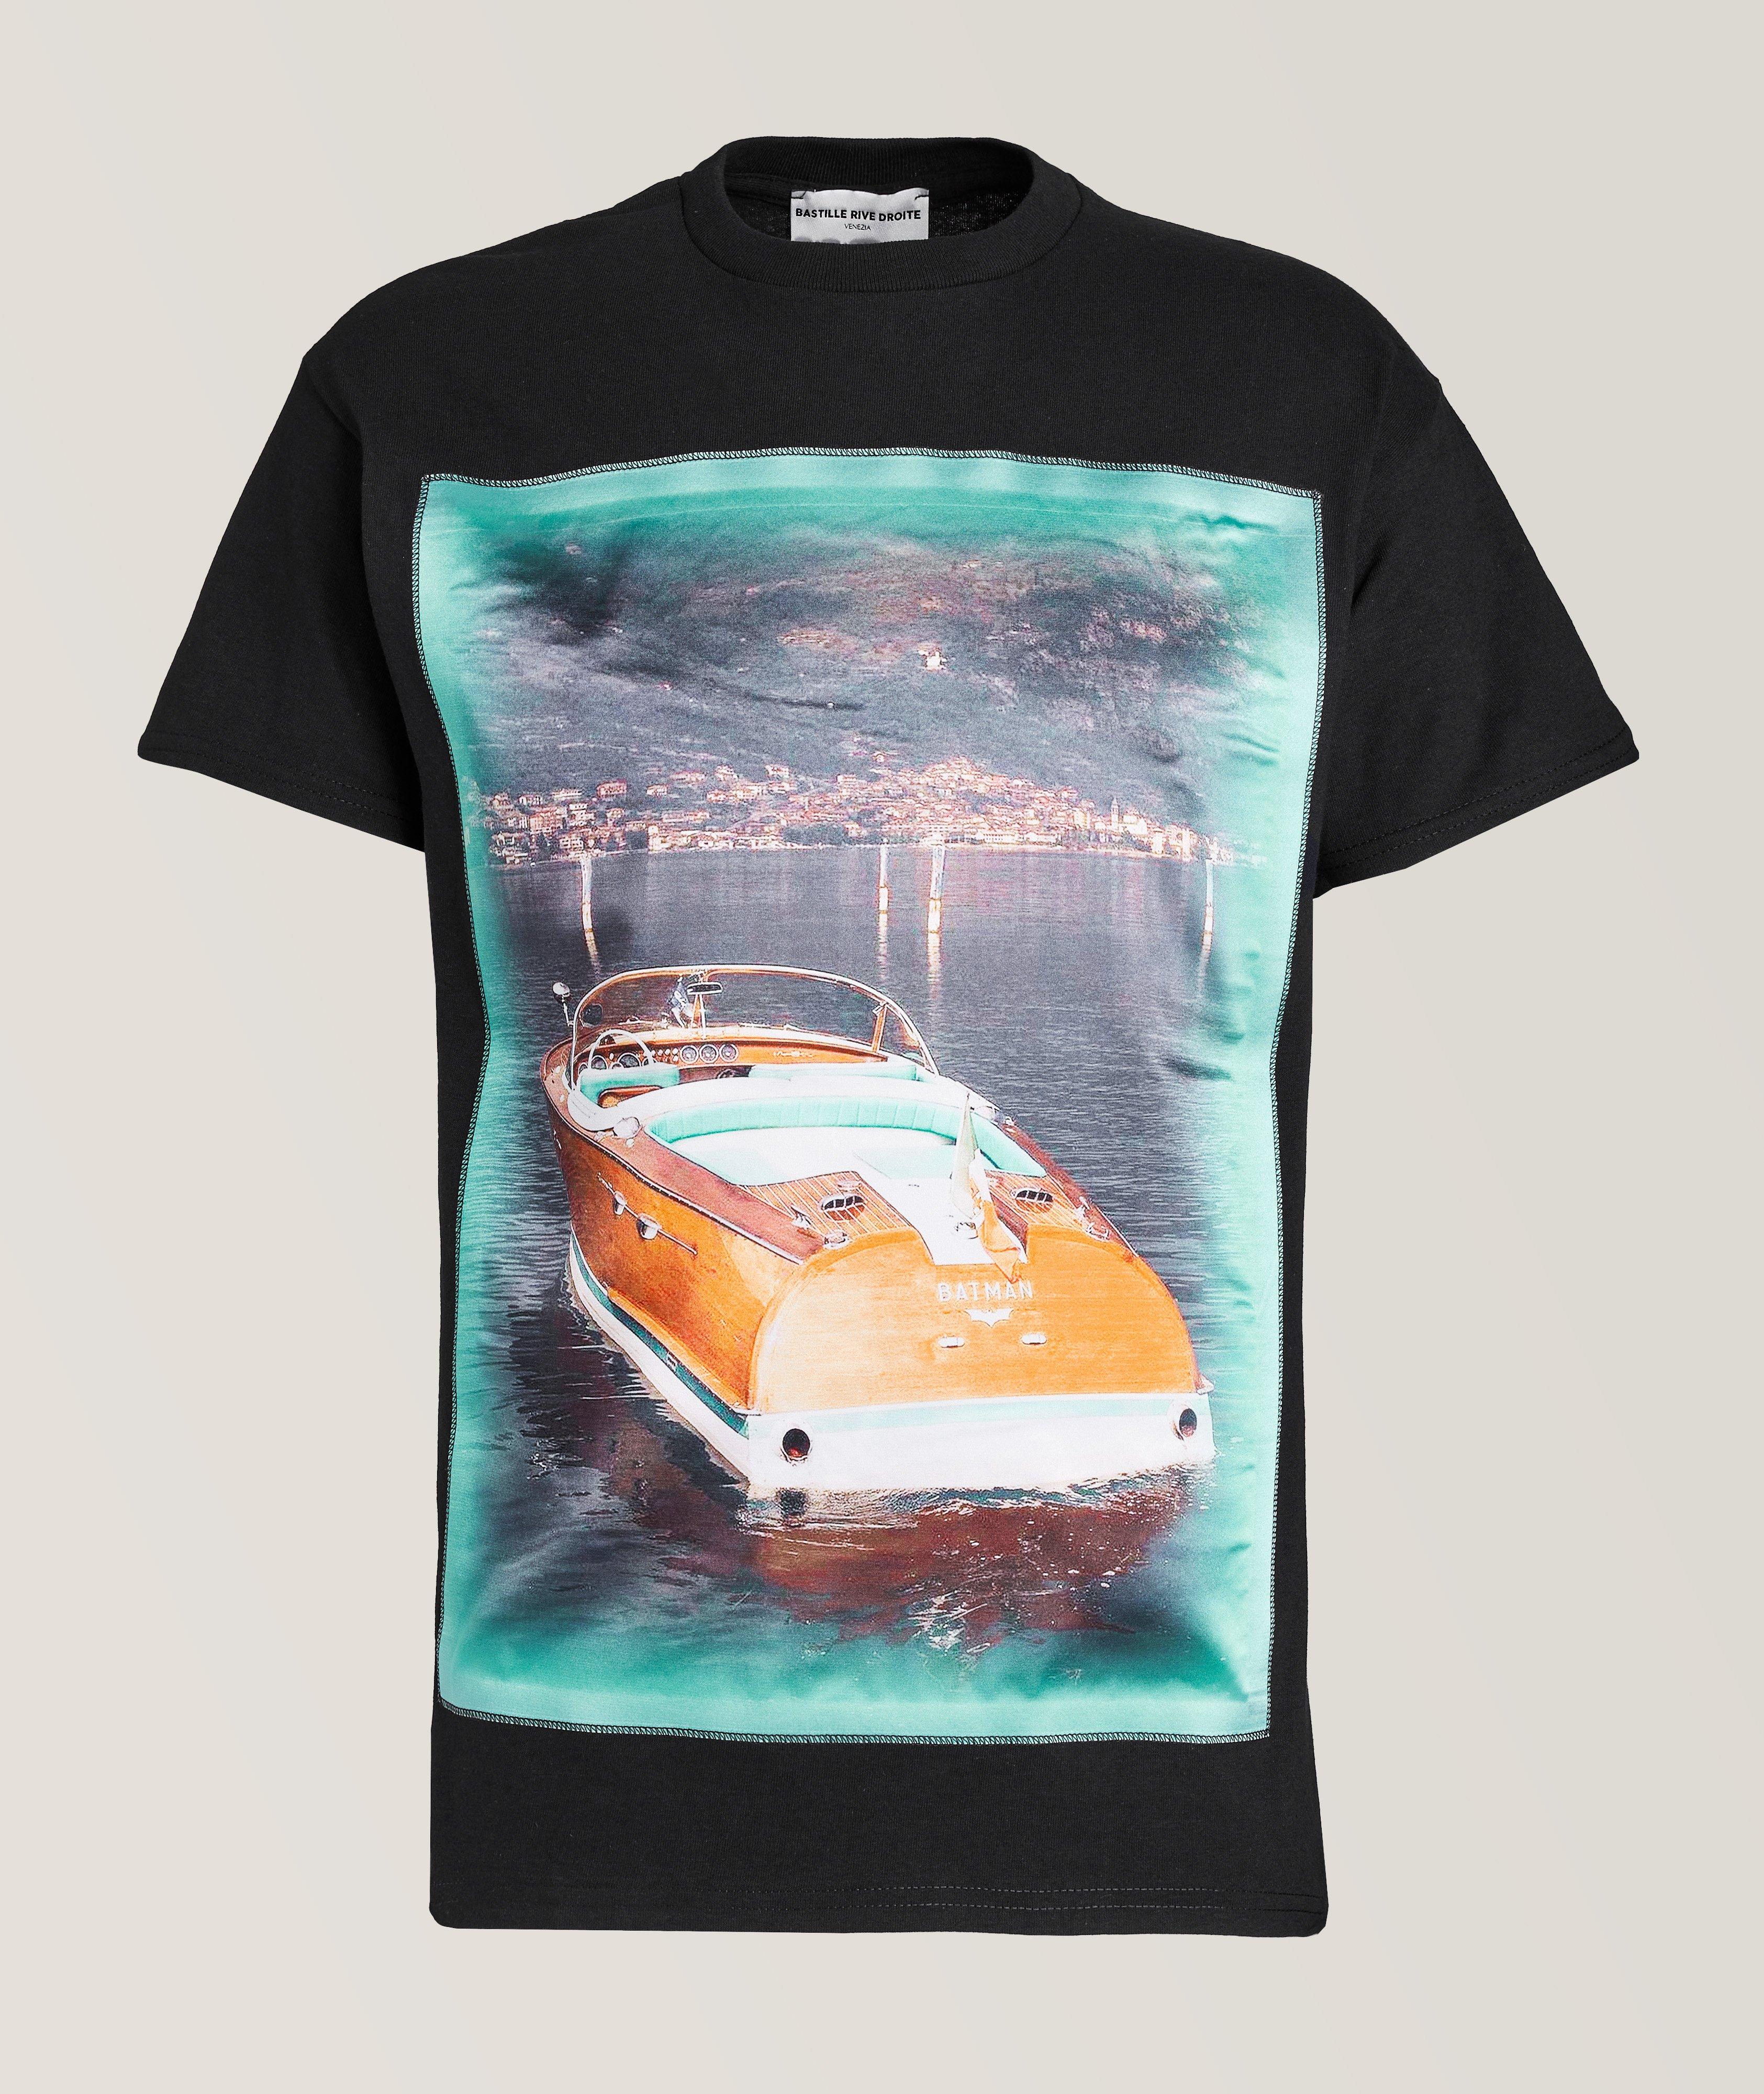 T-shirt avec image de bateau image 0